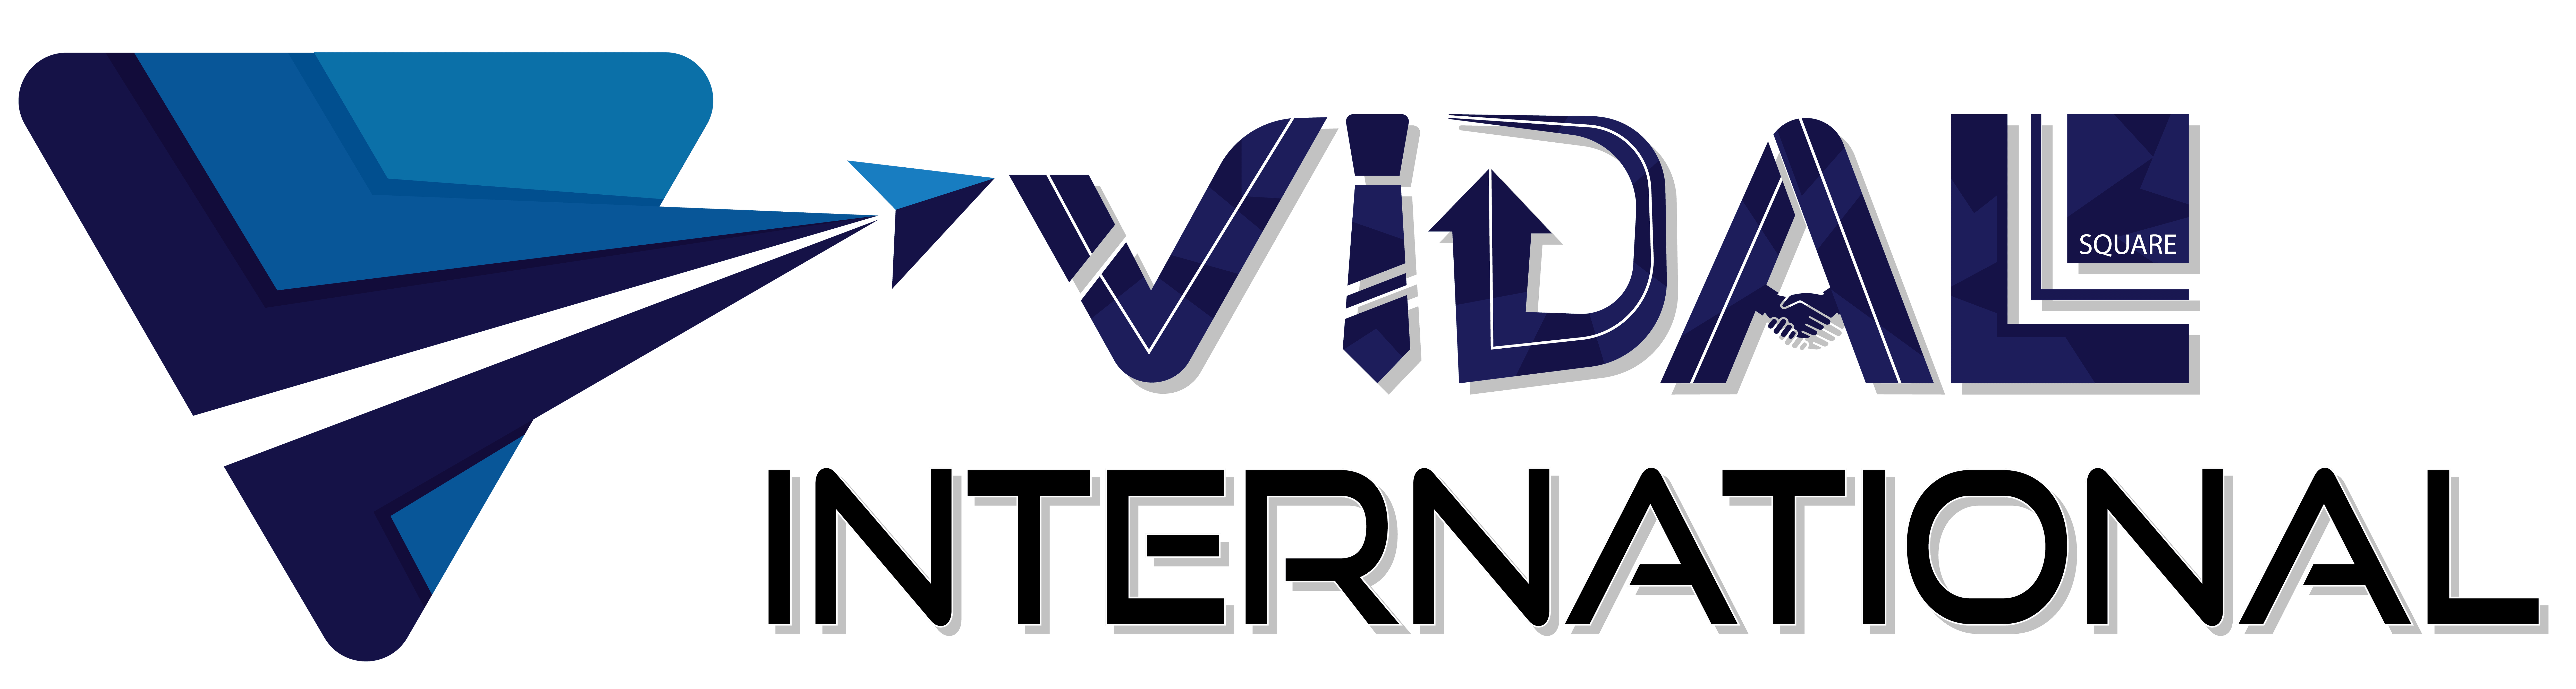 Vidal International